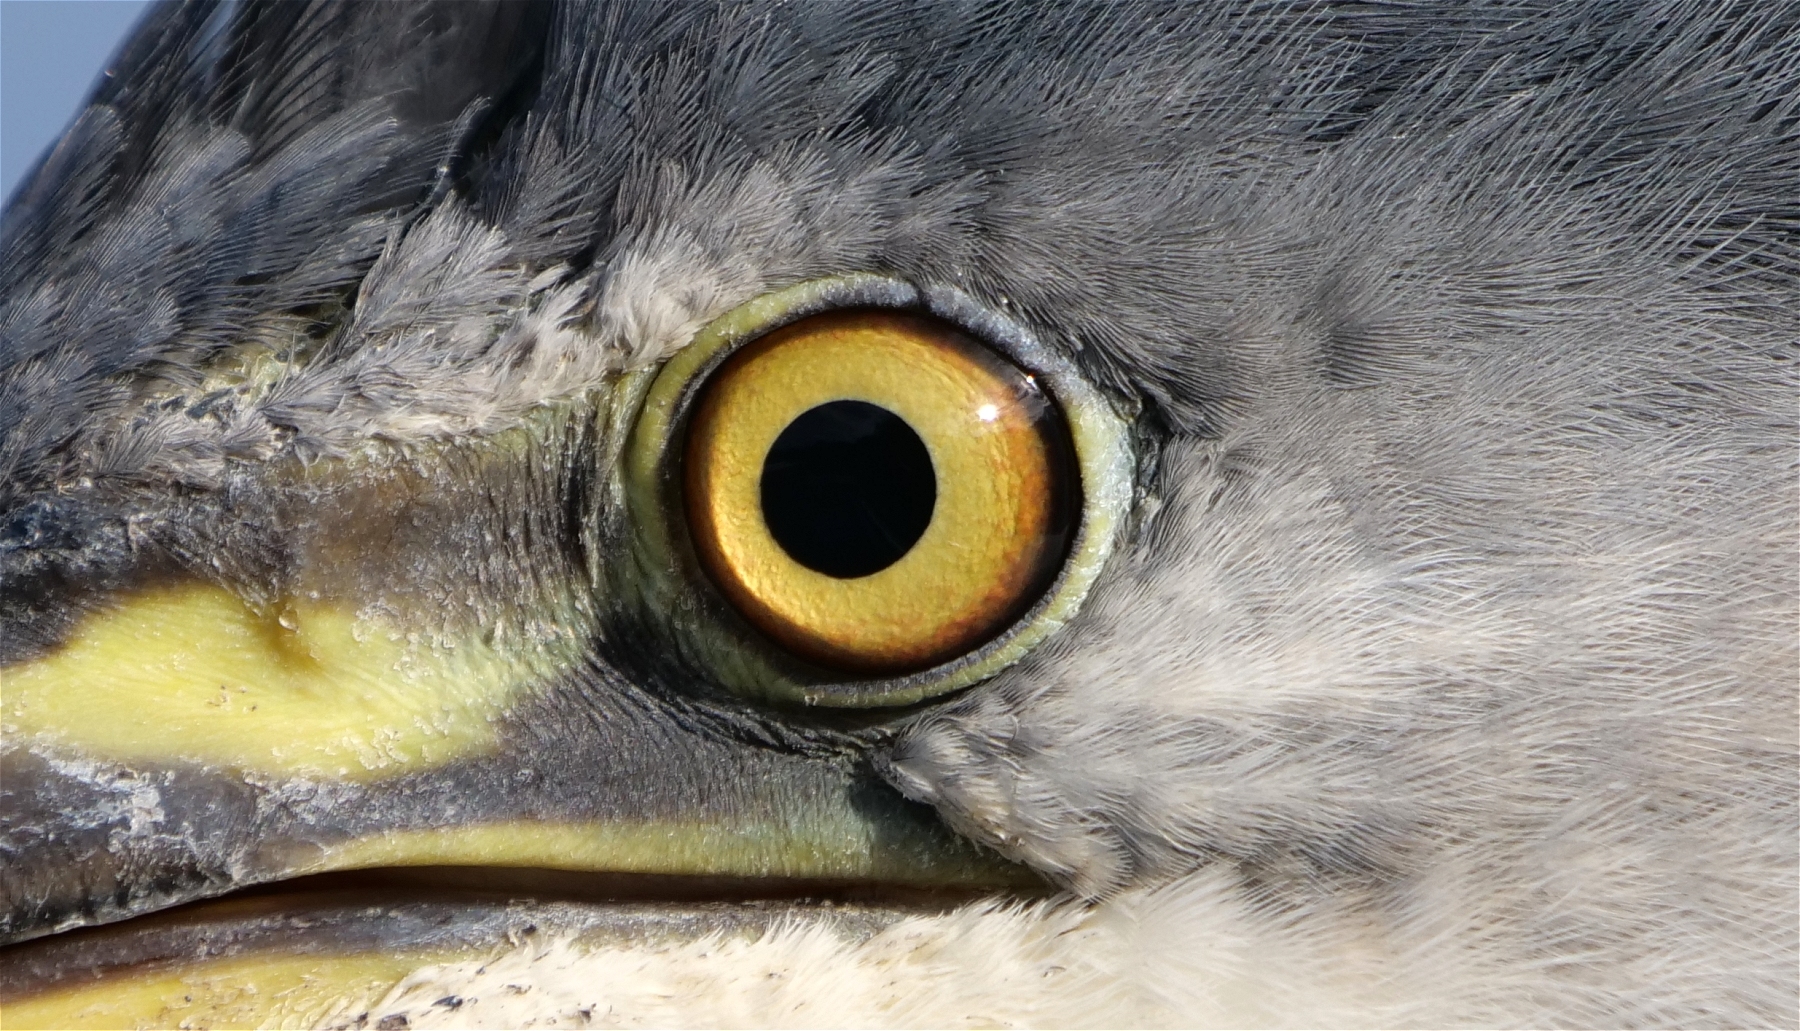 Herons eye by Russell Dean